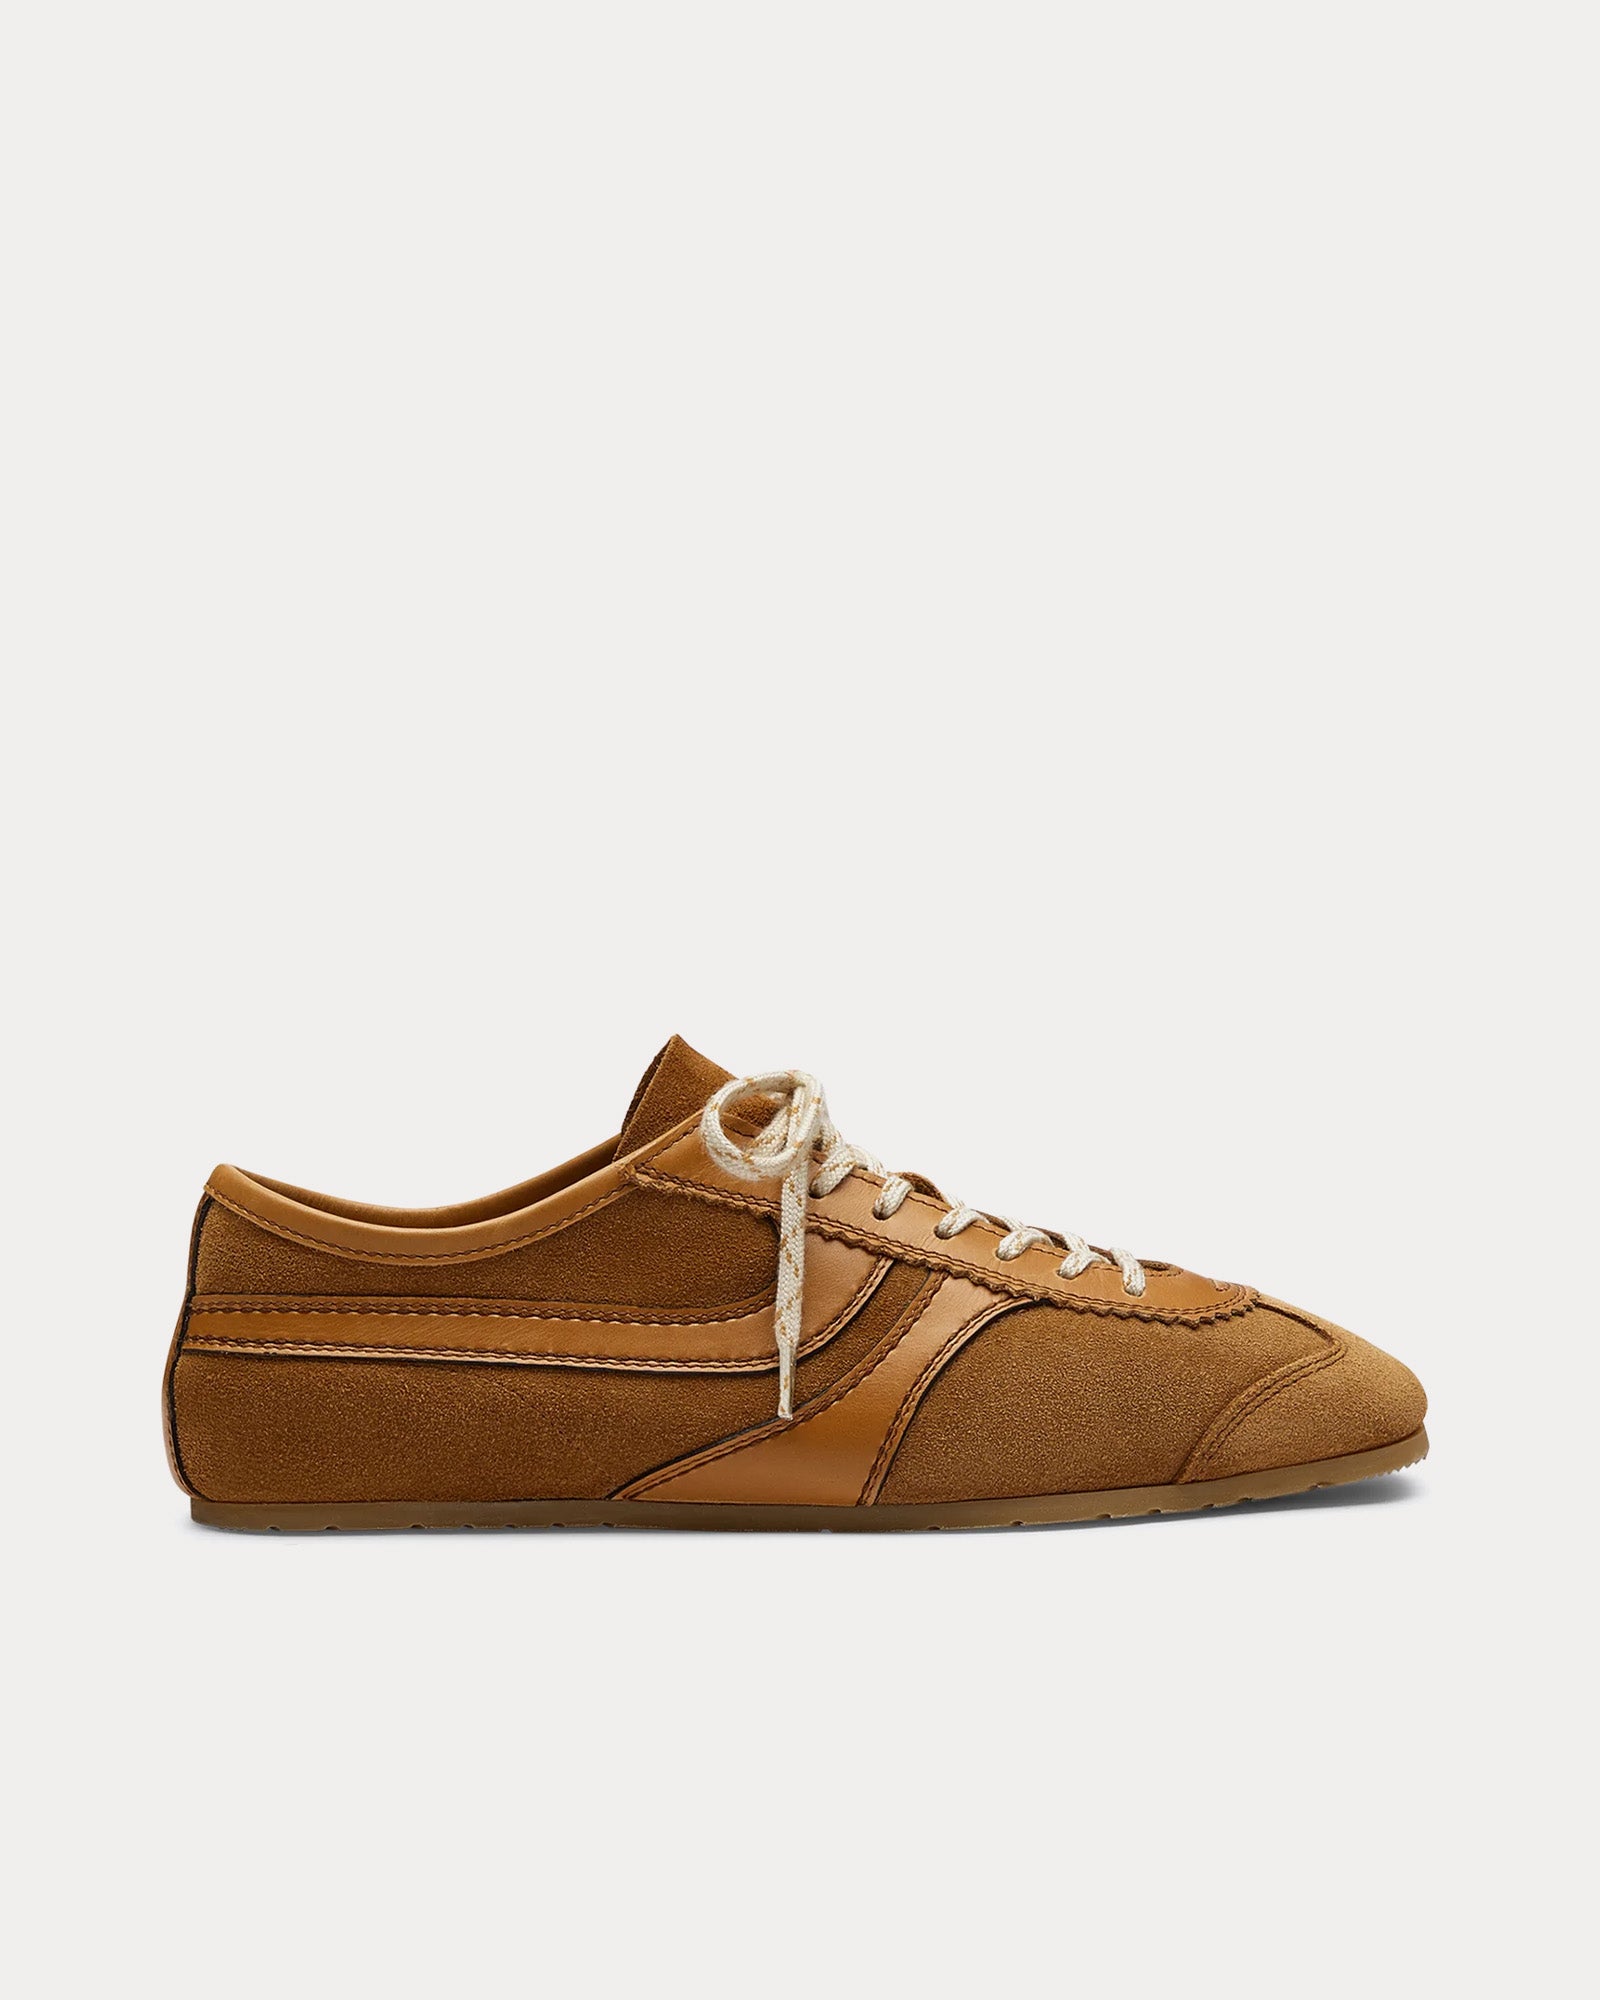 Dries Van Noten - 70's Suede Tan Low Top Sneakers